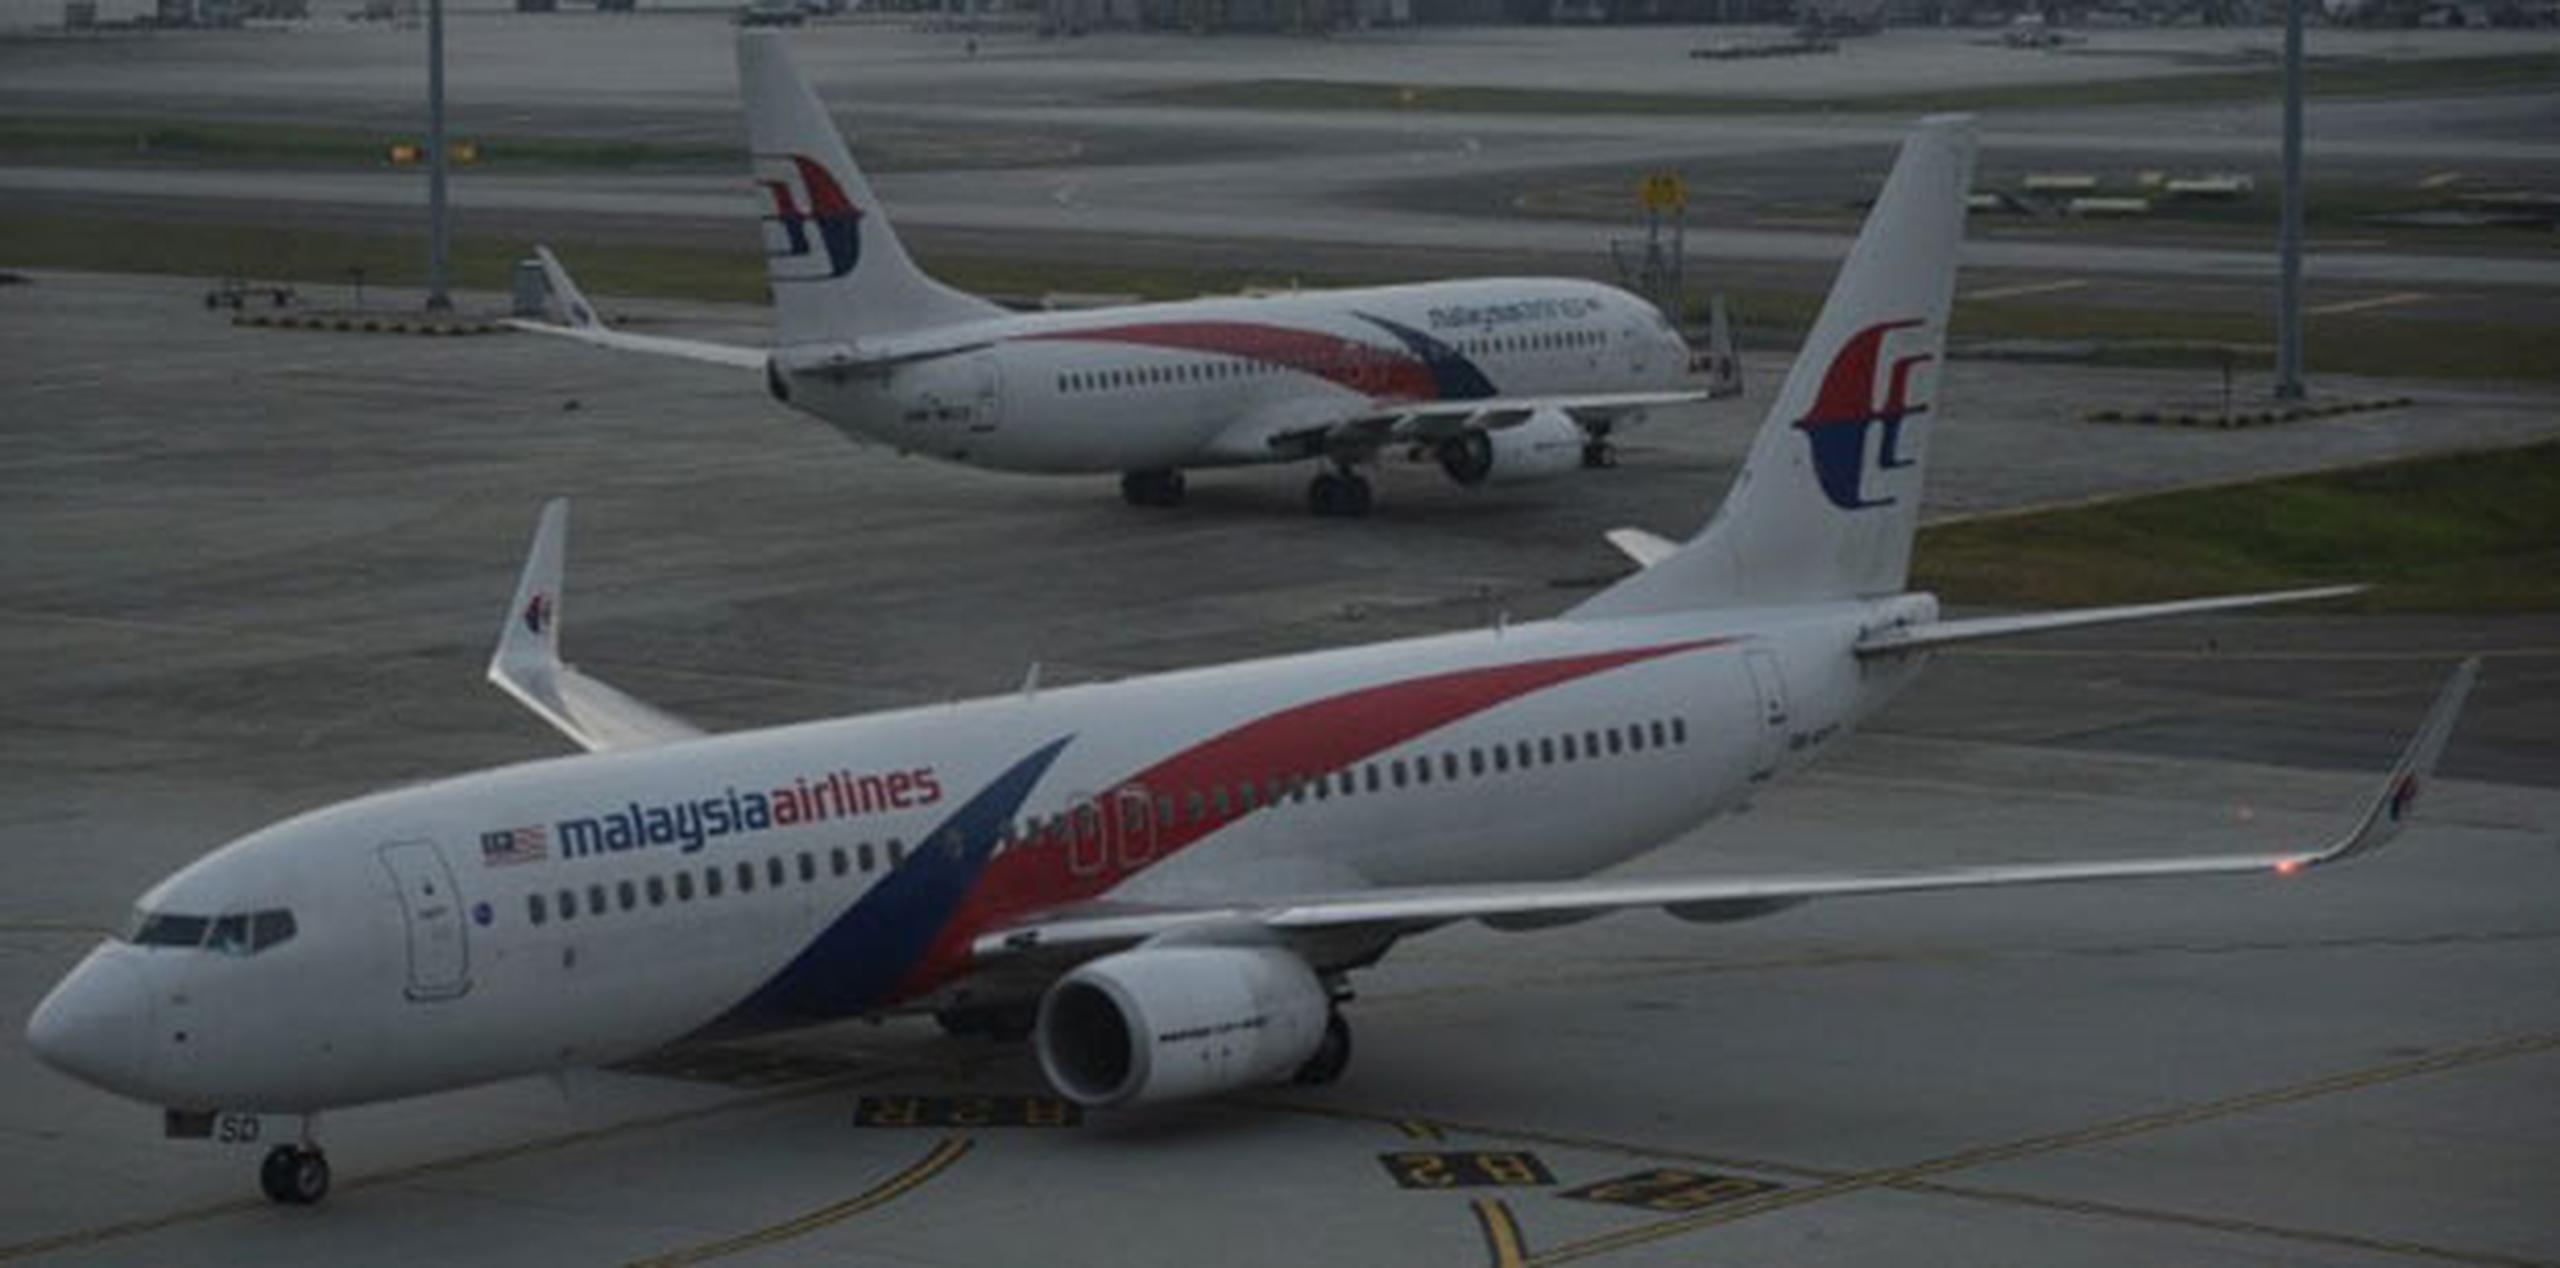 El avión de Malaysia Airlines con 239 personas a bordo salió de Kuala Lumpur la madrugada del 8 de marzo con destino a Pekín, pero fue desviado al poco tiempo después de que alguien apagara los sistemas de comunicación. (AFP / Mohd Rasfan)